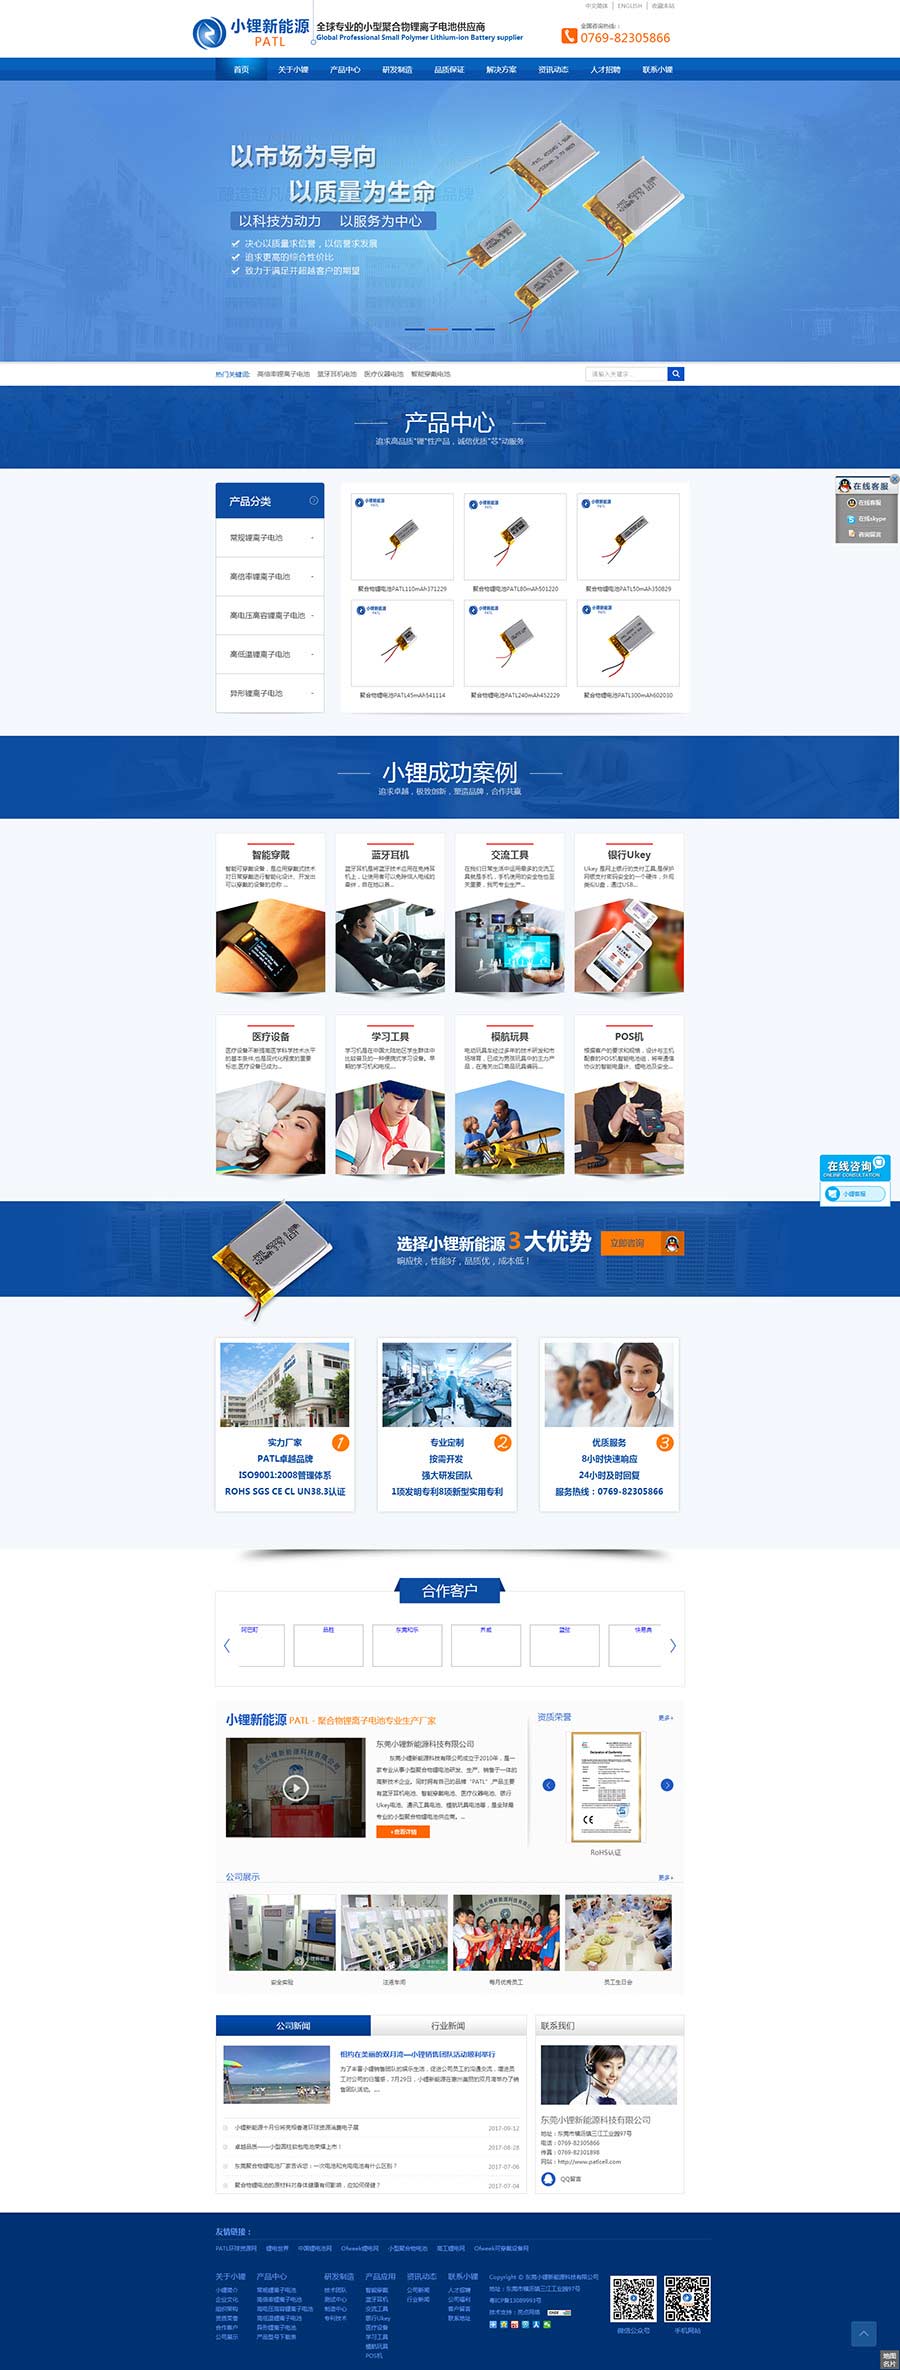 東莞鋰電池營銷型網站案例